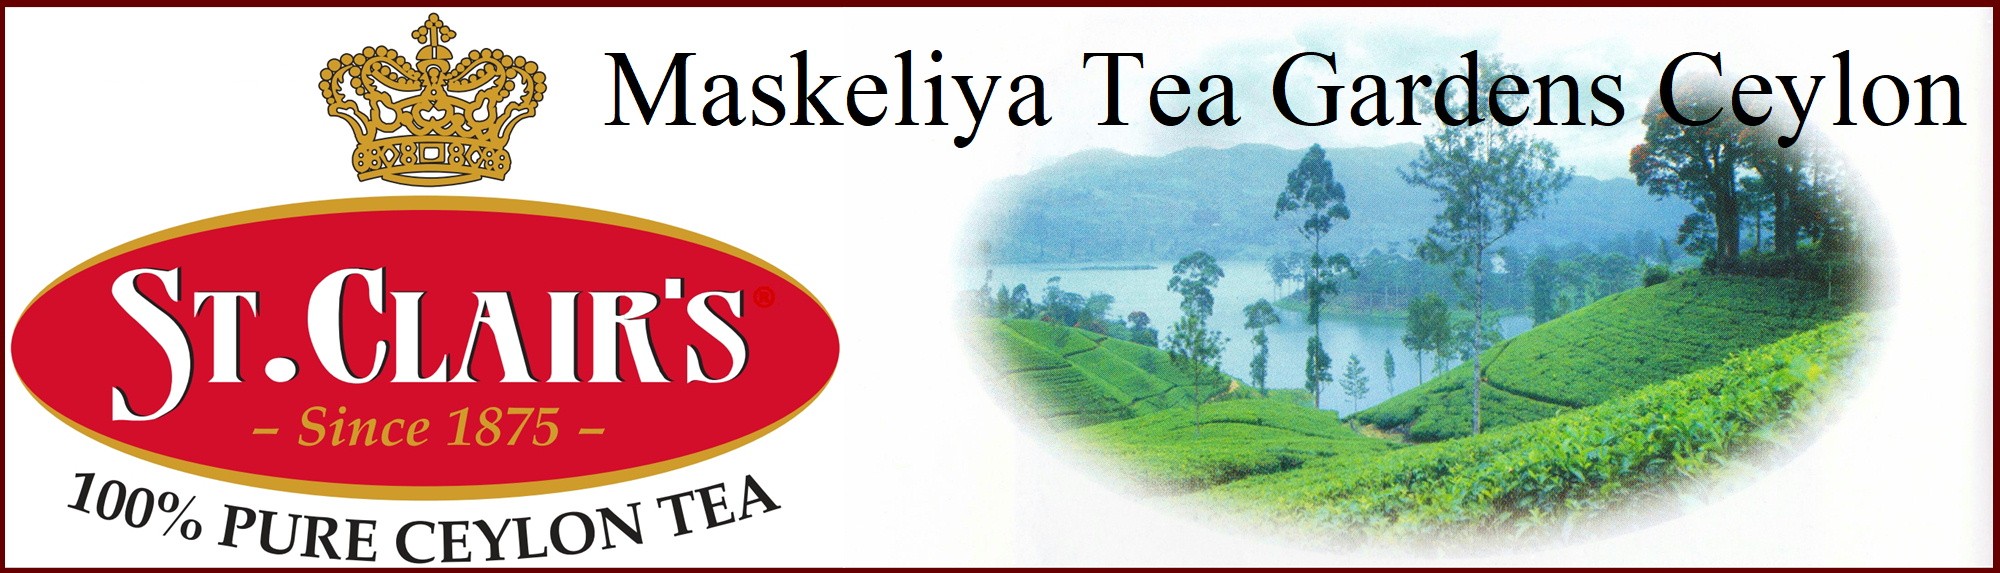 Maskeliya Tea Gardens Ceylon Ltd